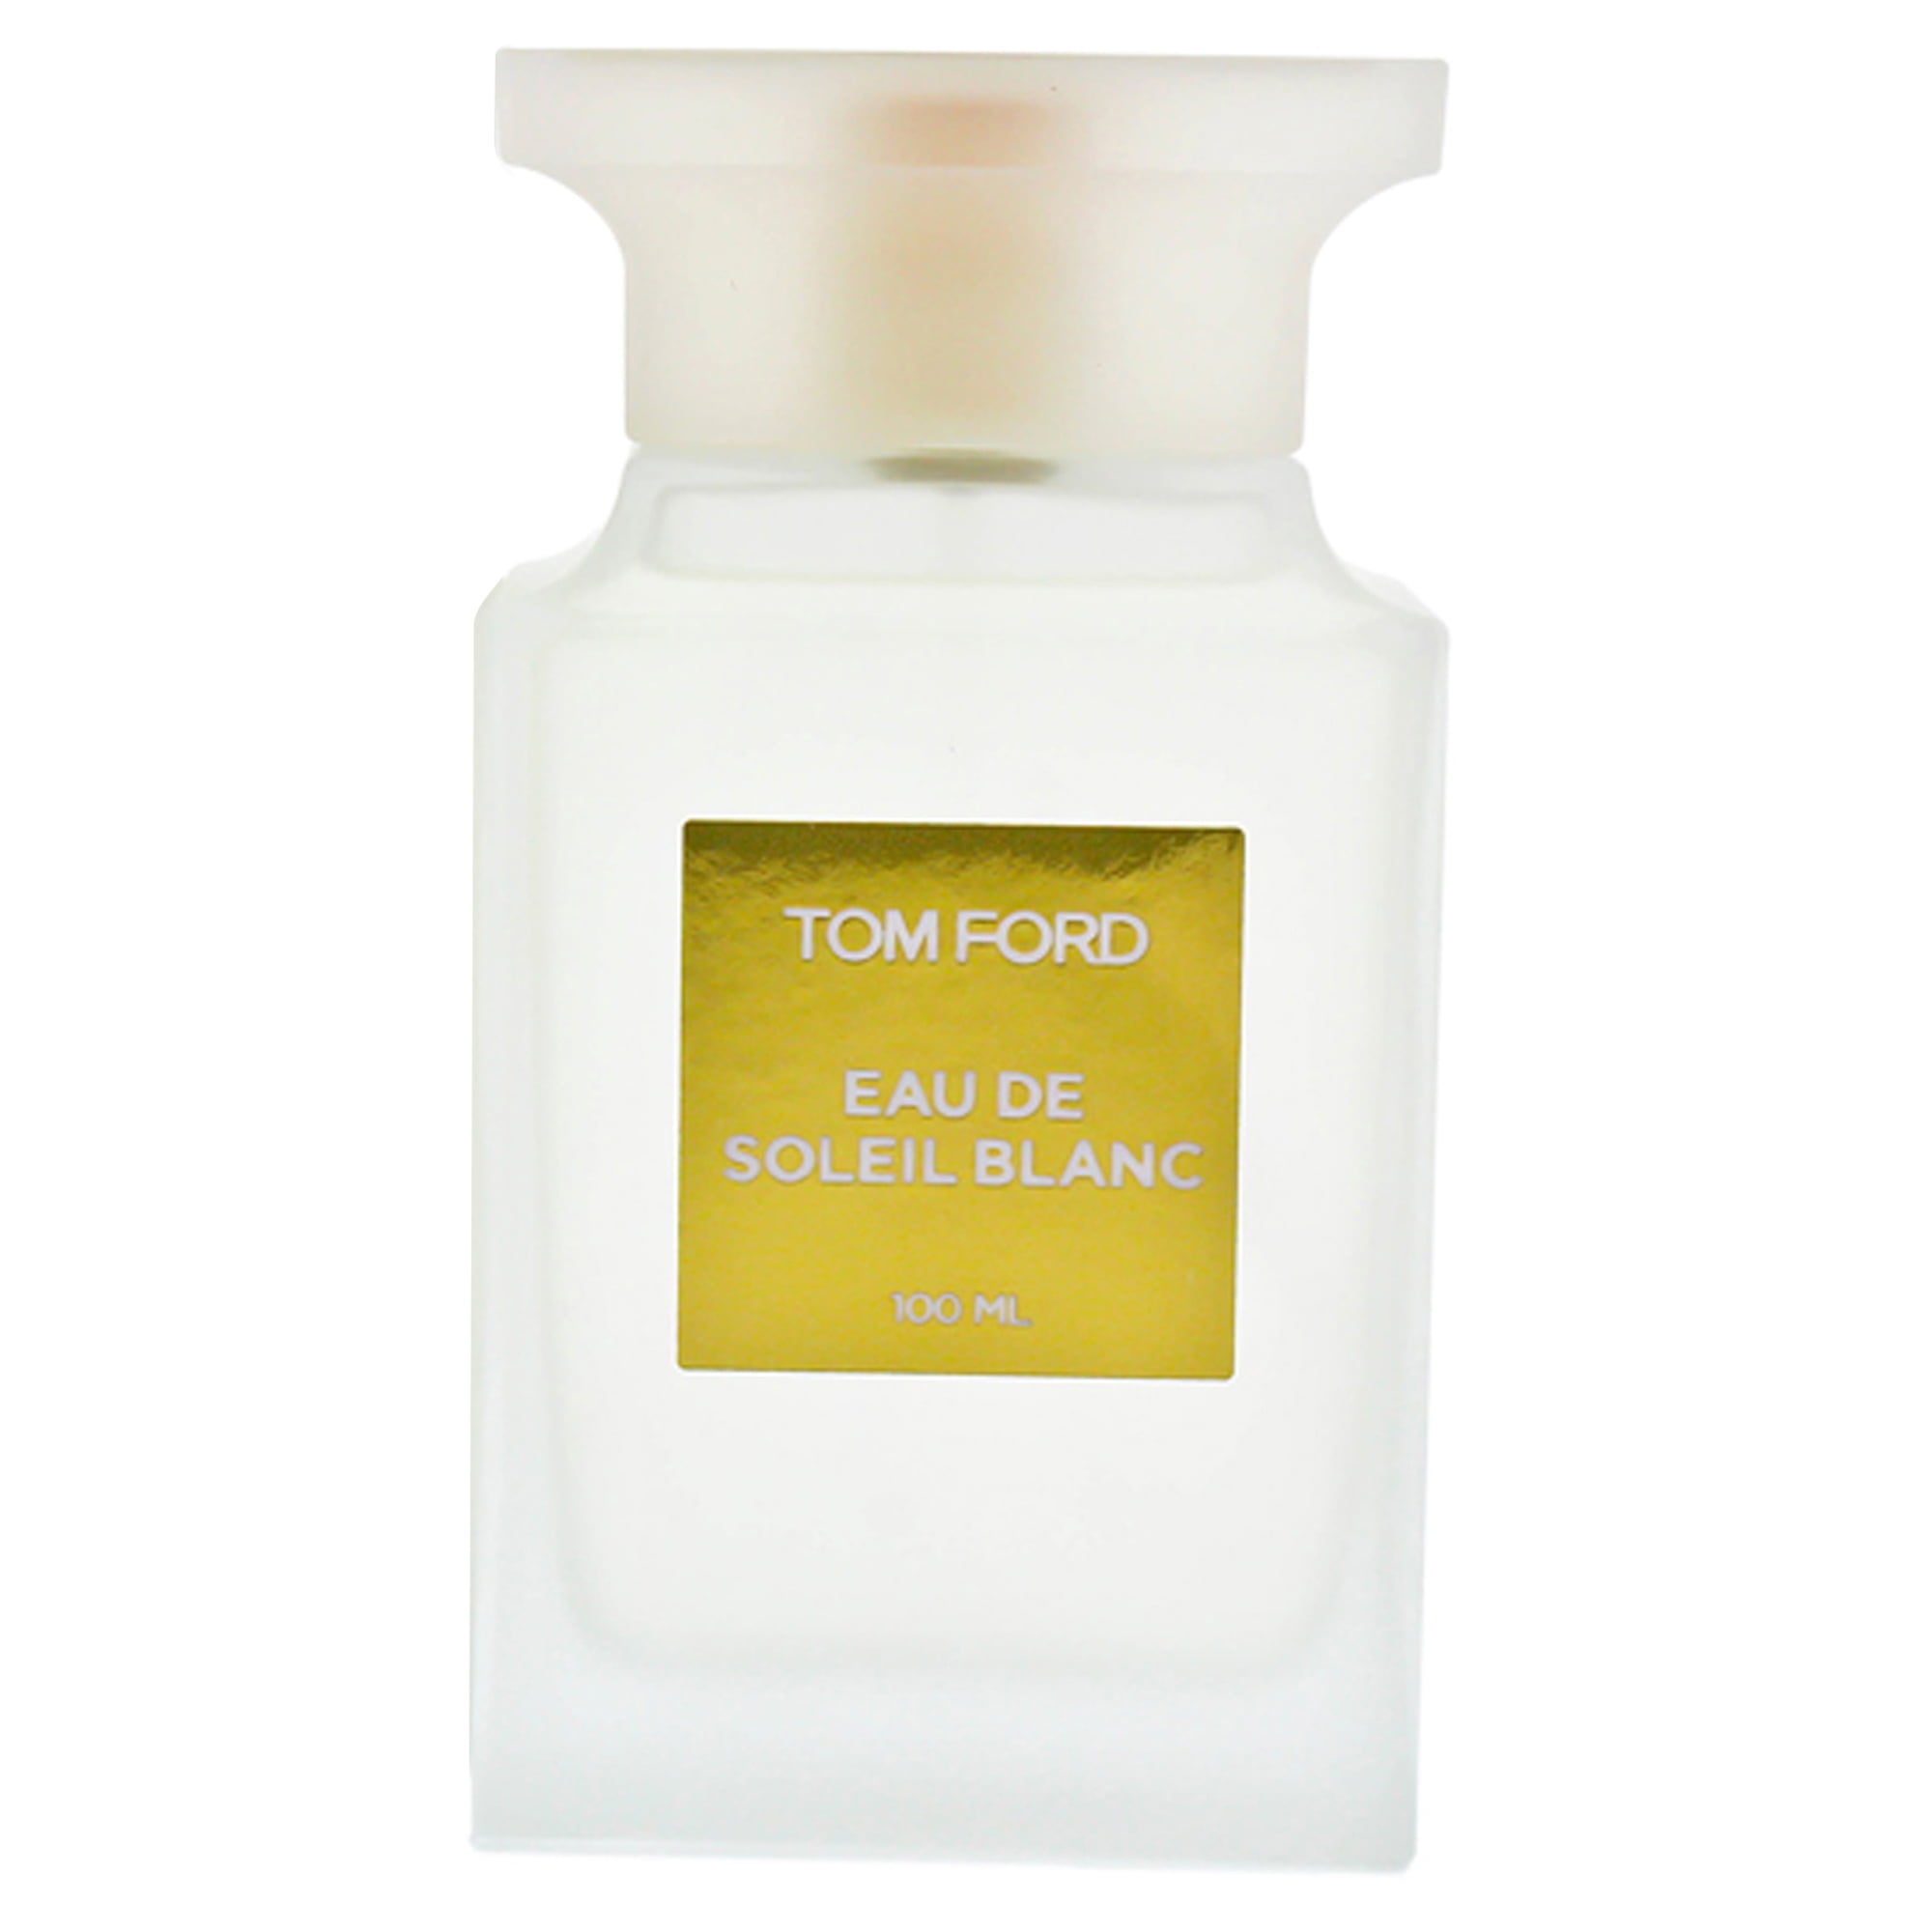 Tom Ford Eau De Soleil Blanc Eau De Toilette Perfume for Women 3.4 Oz ...